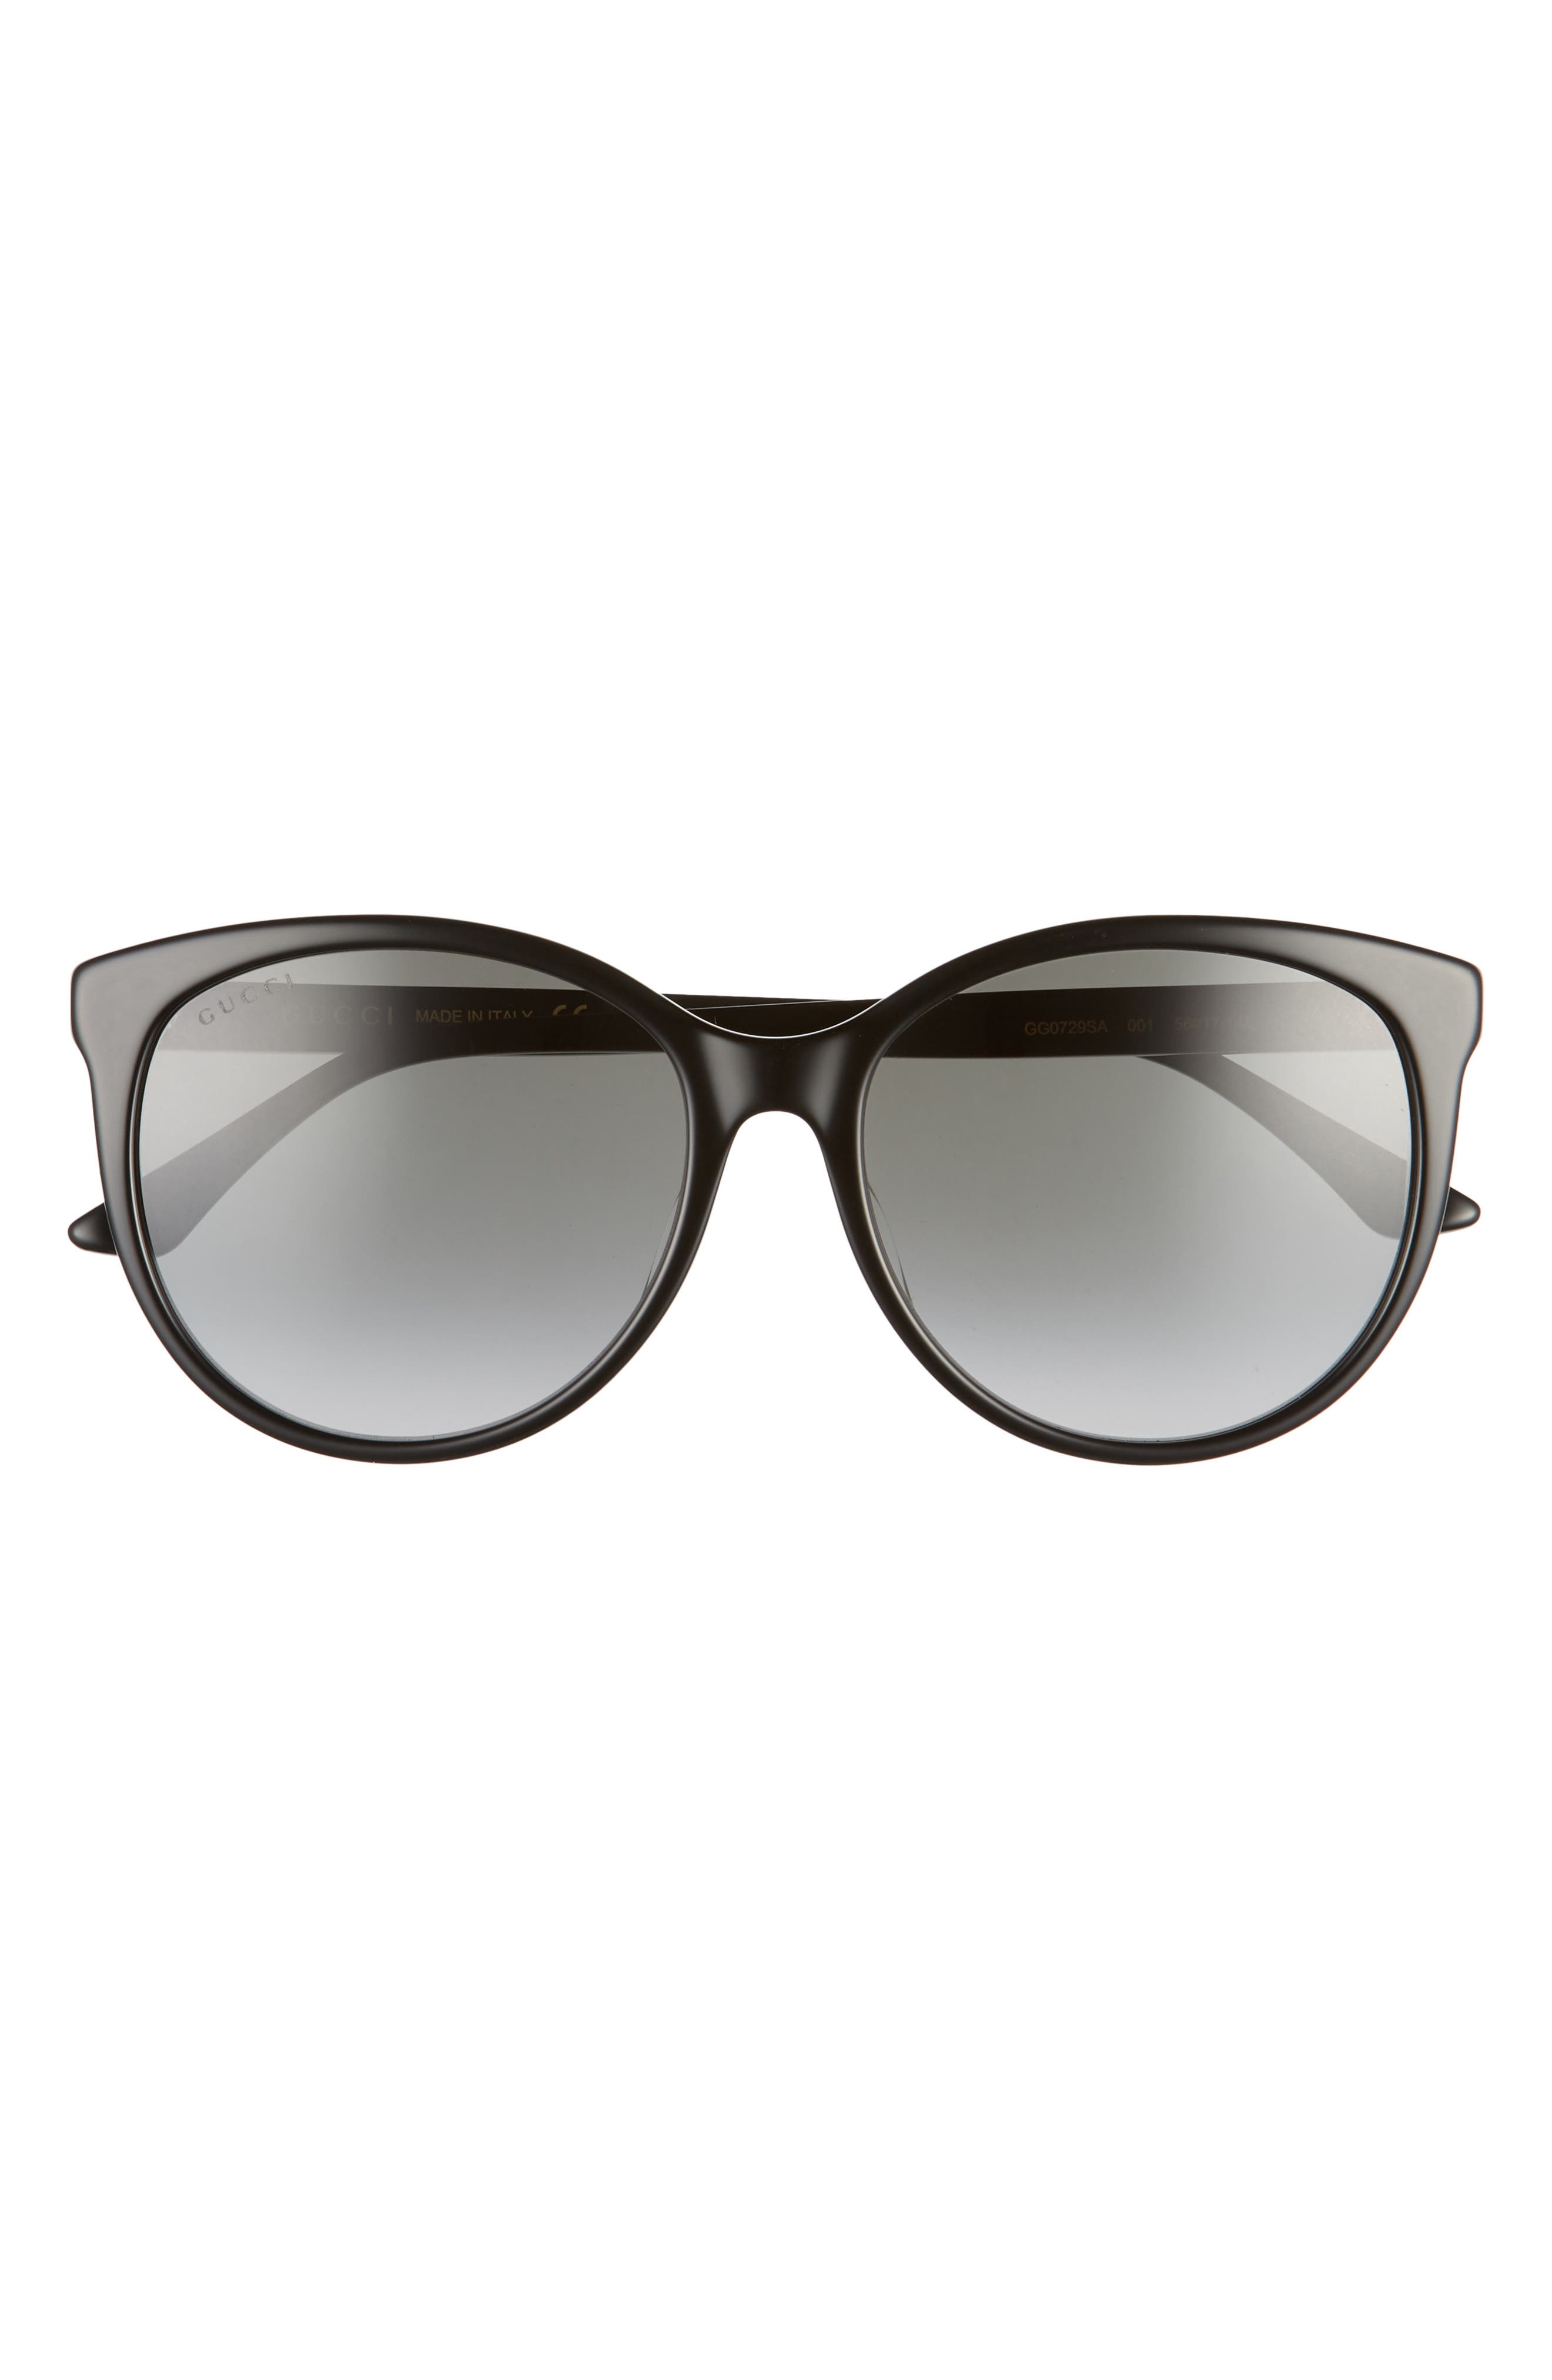 gucci polarized sunglasses women's